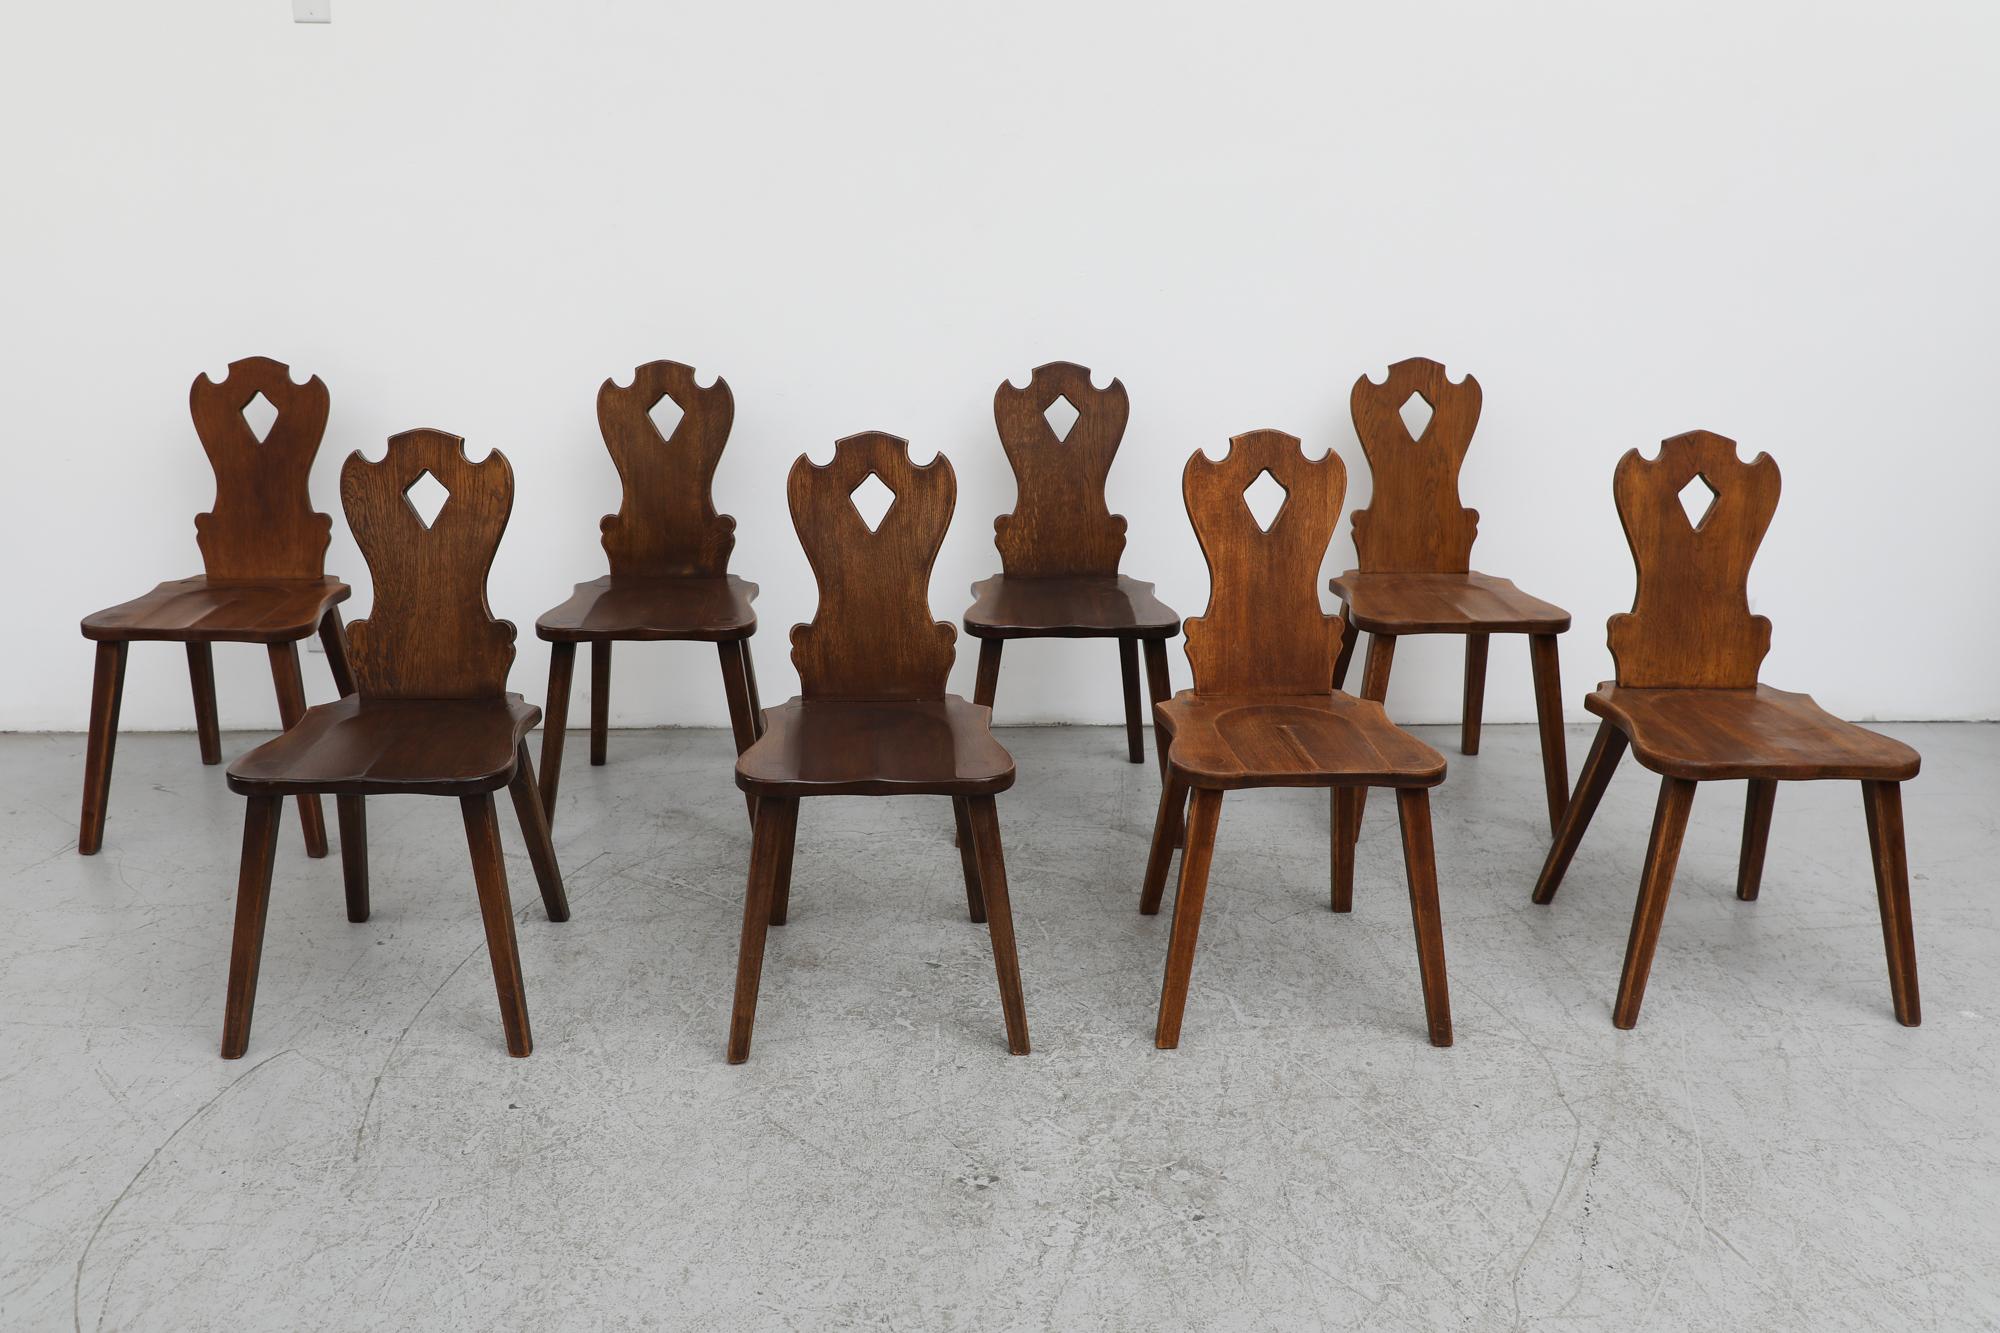 Lot de 6 chaises en bois massif brutaliste, sculptées à la main et d'une grande beauté organique. Stylistiquement, il s'agit d'une sorte de mariage entre les sculptures ornées du style tyrolien et l'esthétique plus épurée du milieu du siècle